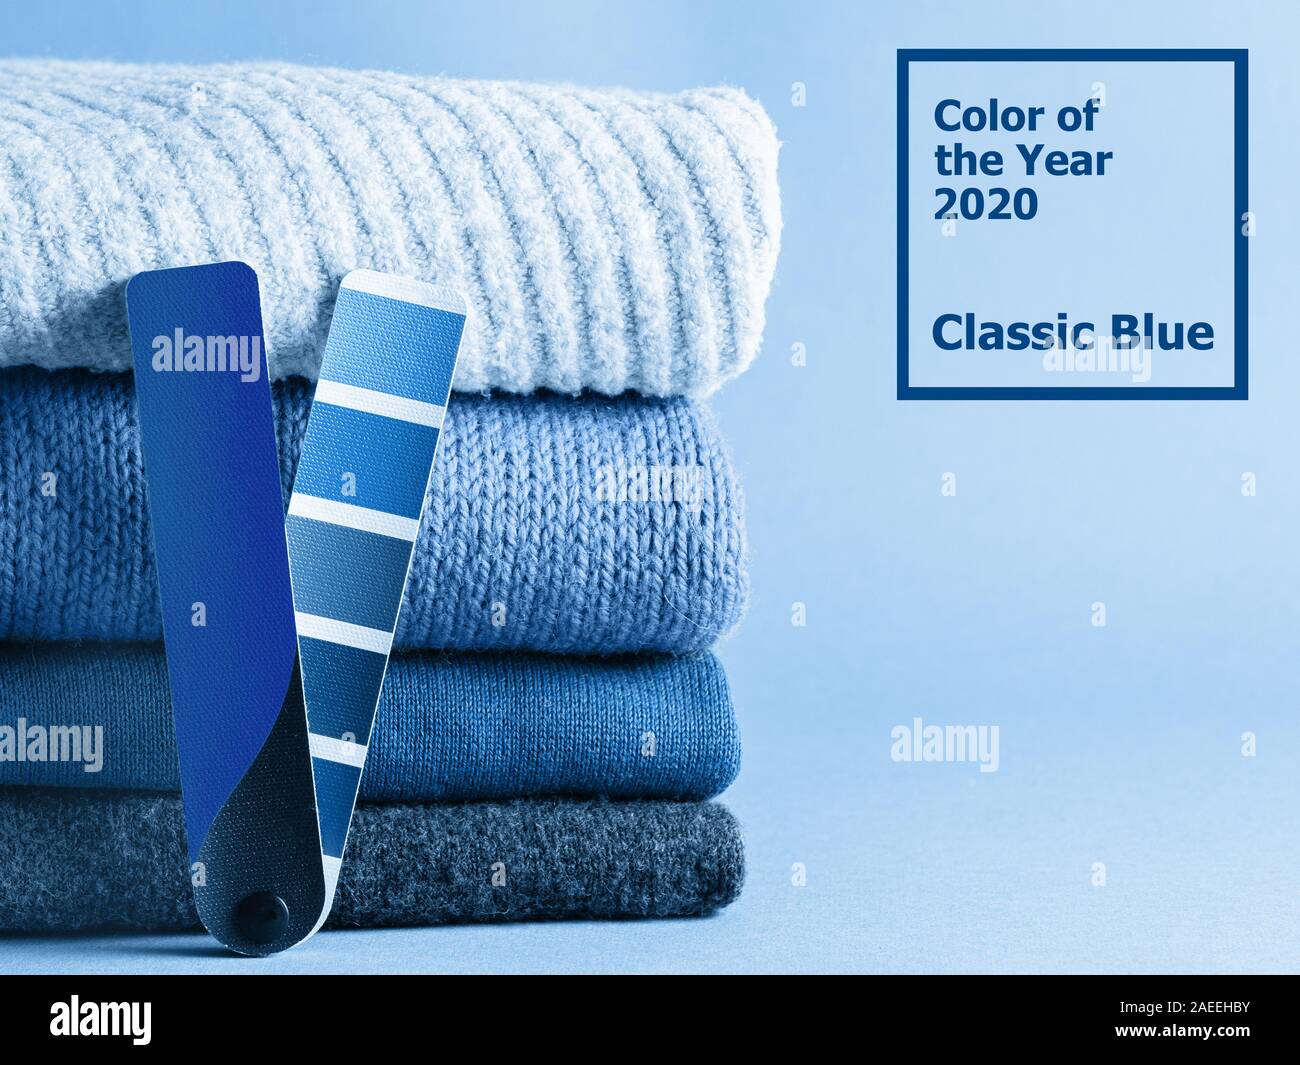 Stapel Pullover und Farbe spaß Palette in classic blue 2020 Farbe. Farbe des Jahres Konzept 2020 für die Mode- und Bekleidungsindustrie. Stockfoto